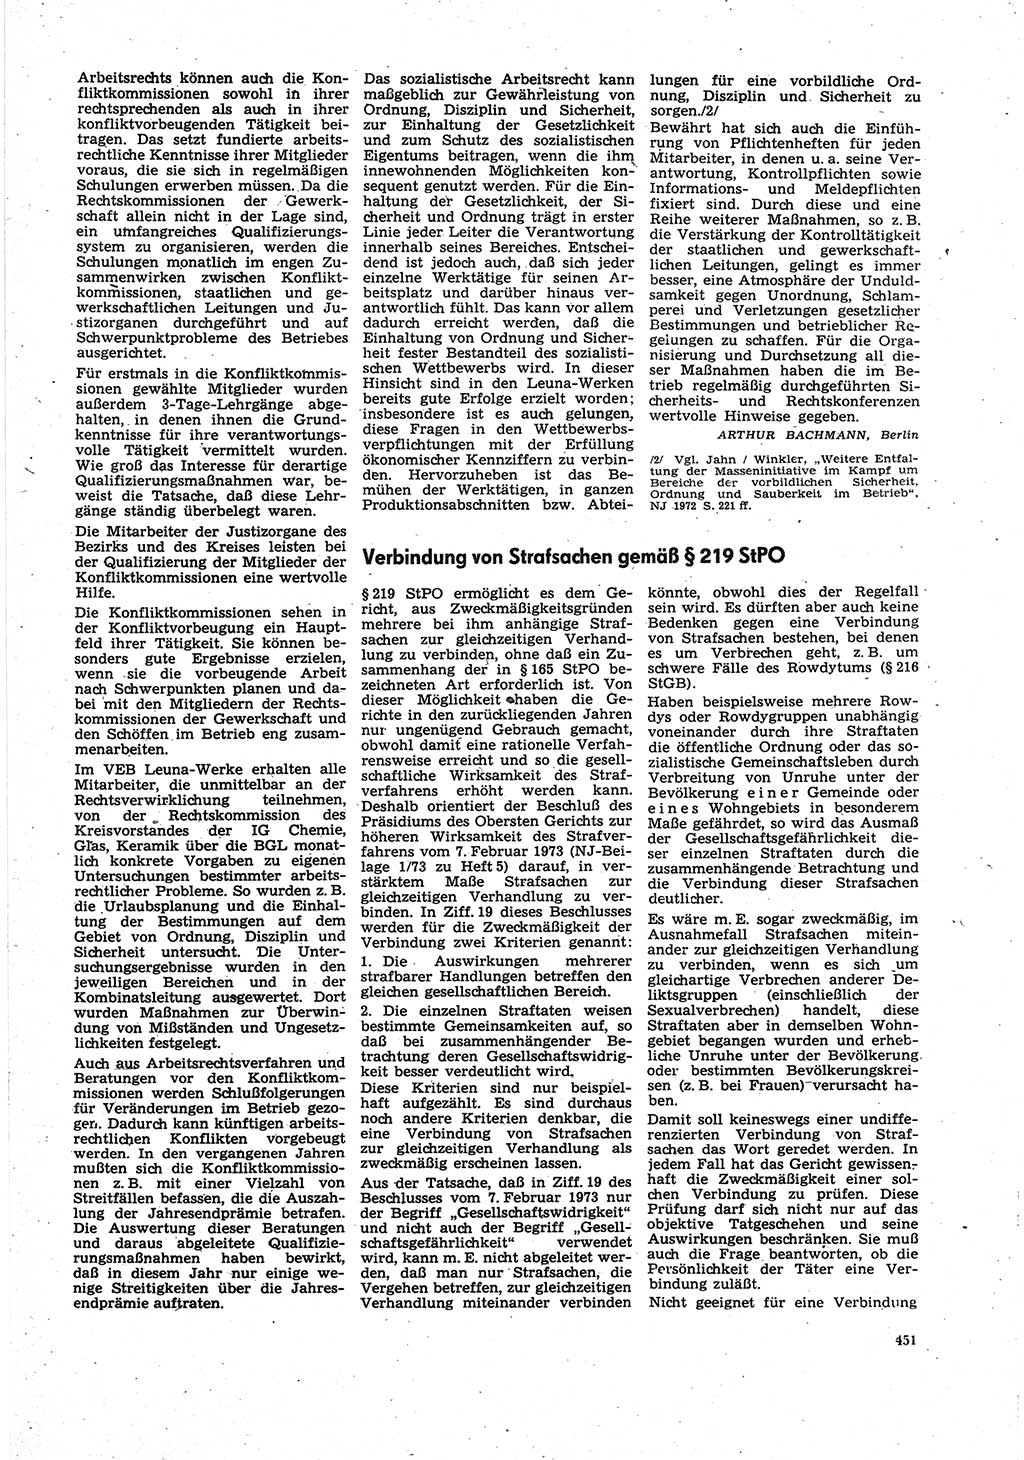 Neue Justiz (NJ), Zeitschrift für Recht und Rechtswissenschaft [Deutsche Demokratische Republik (DDR)], 27. Jahrgang 1973, Seite 451 (NJ DDR 1973, S. 451)